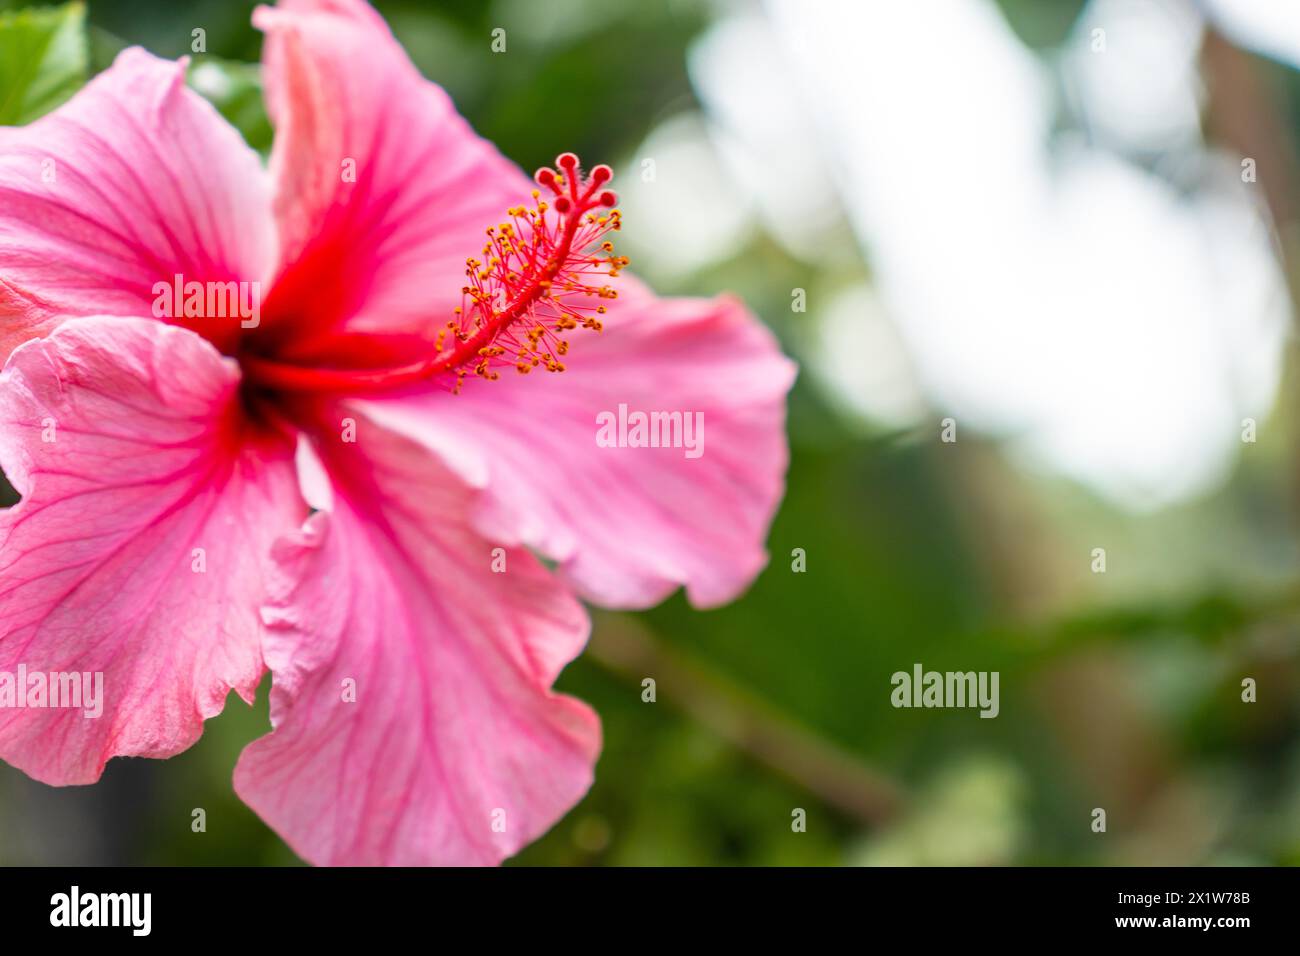 Un fiore rosa con un centro rosso. Il fiore è in piena fioritura ed è circondato da foglie verdi. Concetto di bellezza e meraviglia naturale Foto Stock